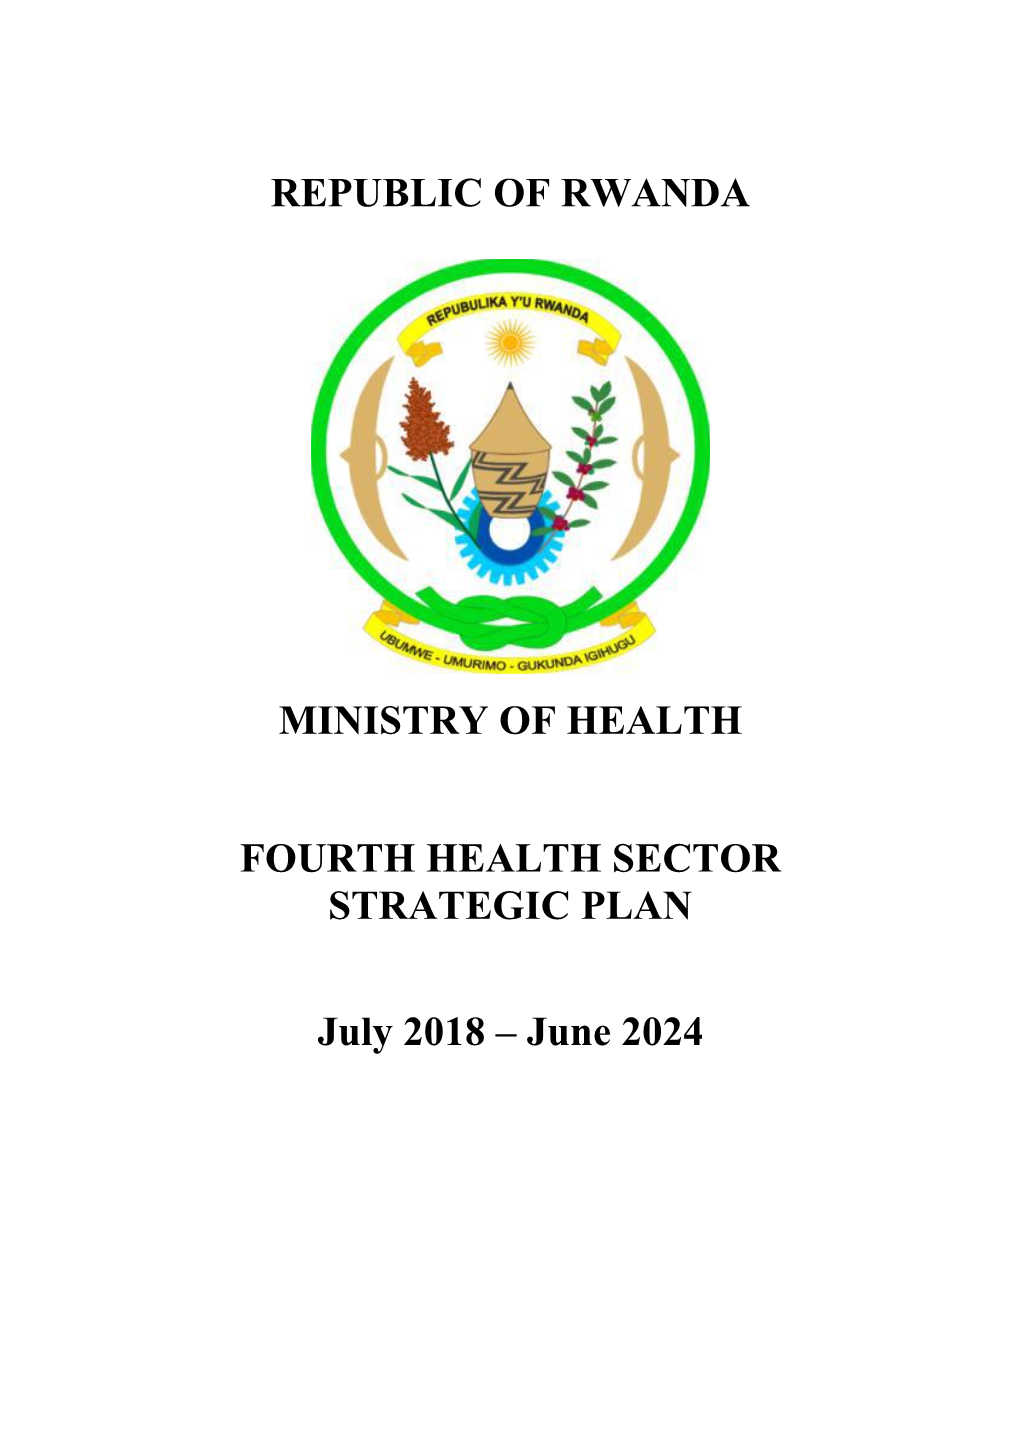 Republic of Rwanda Ministry of Health Fourth Health